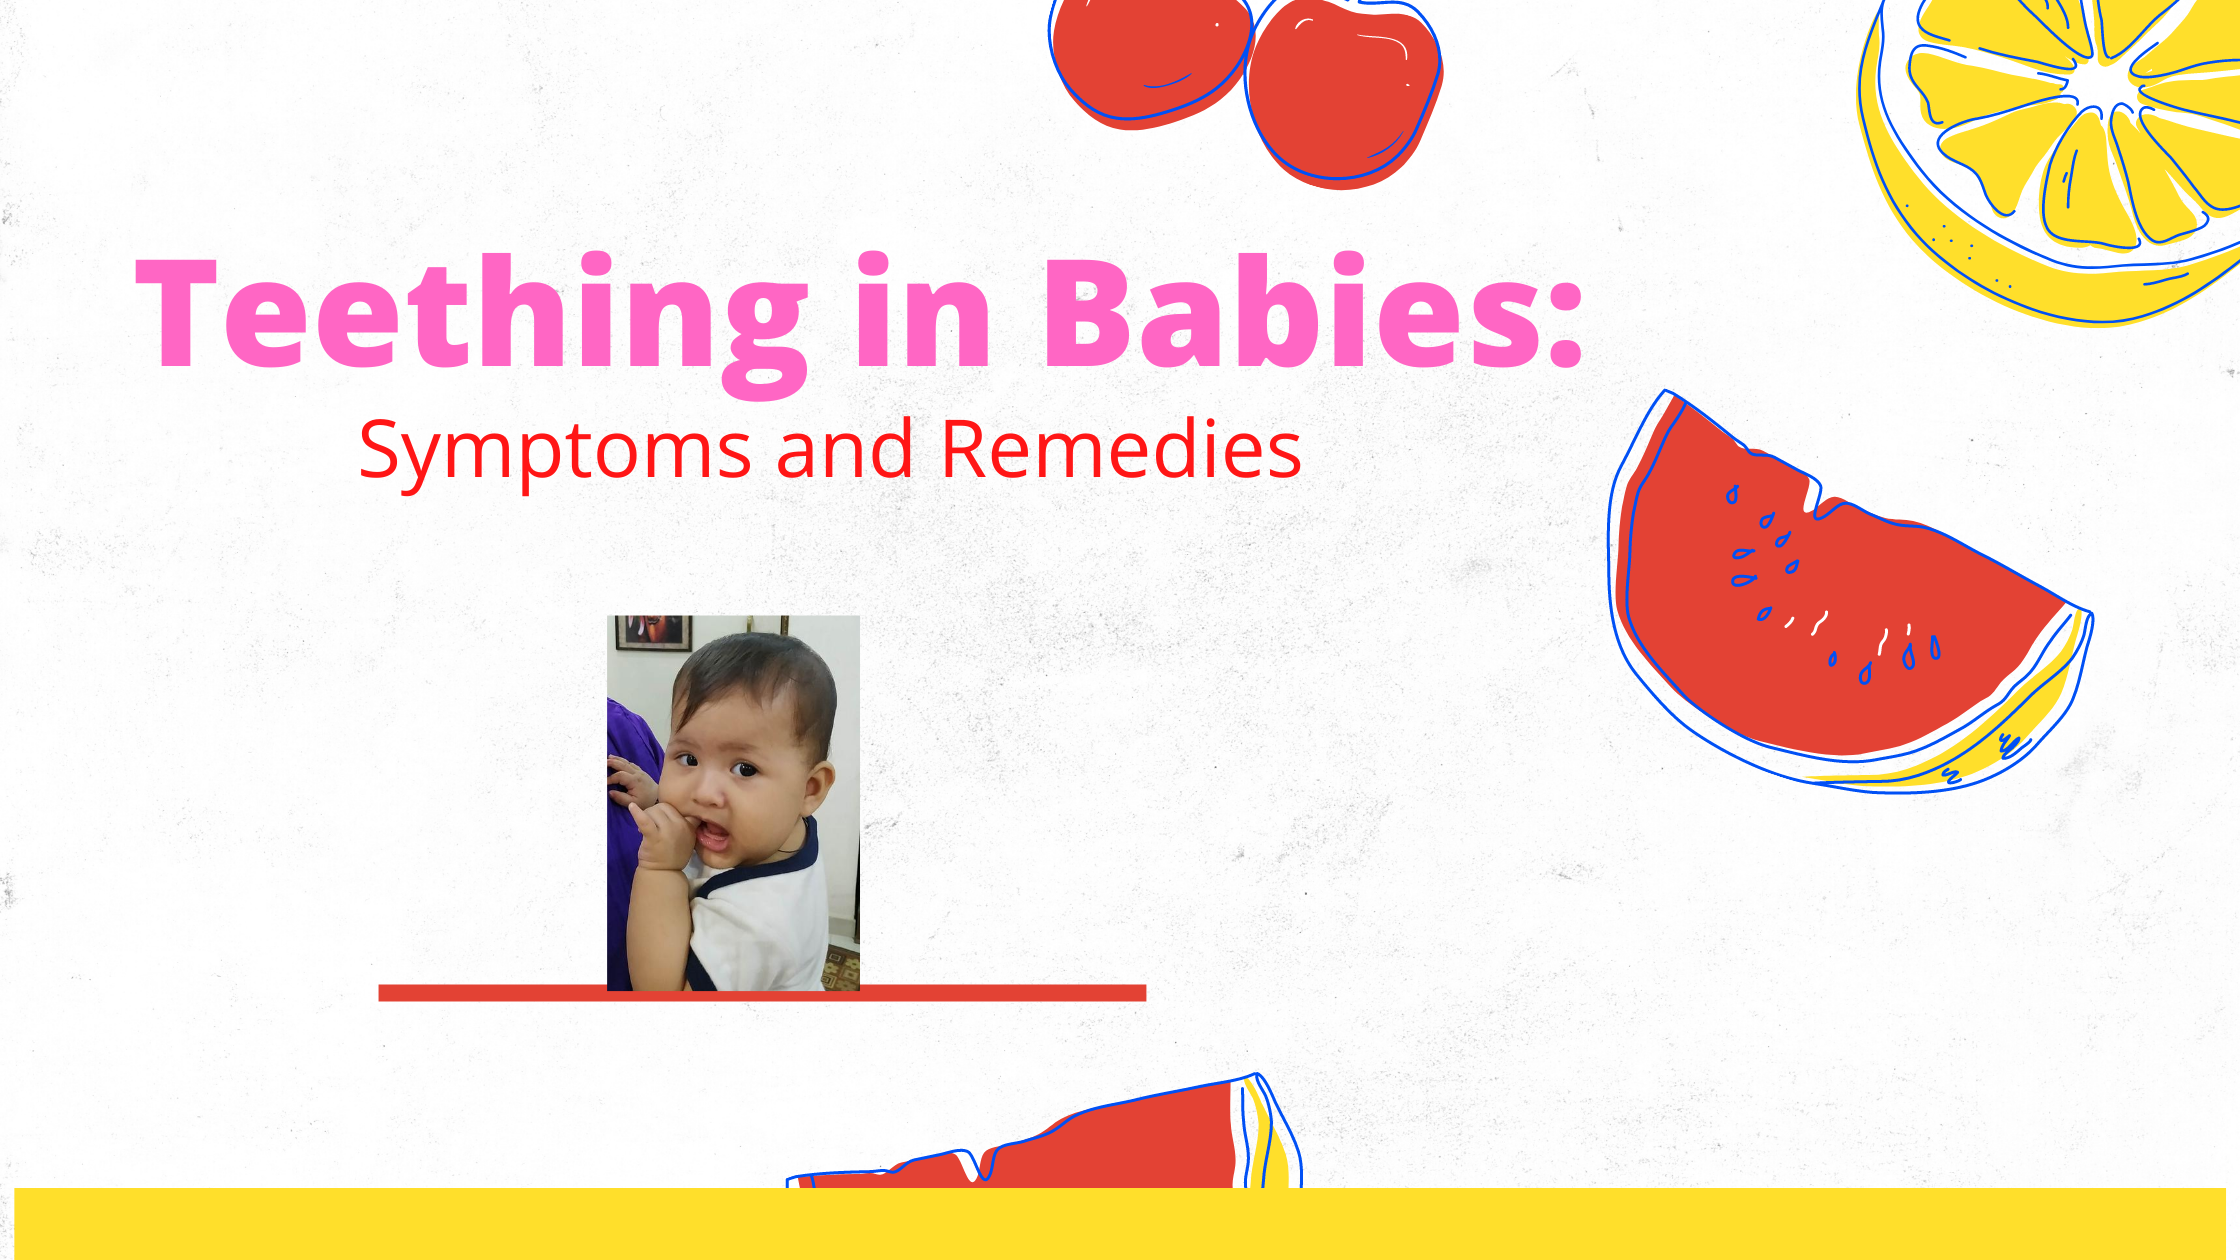 Teething in Babies: Symptoms and remedies